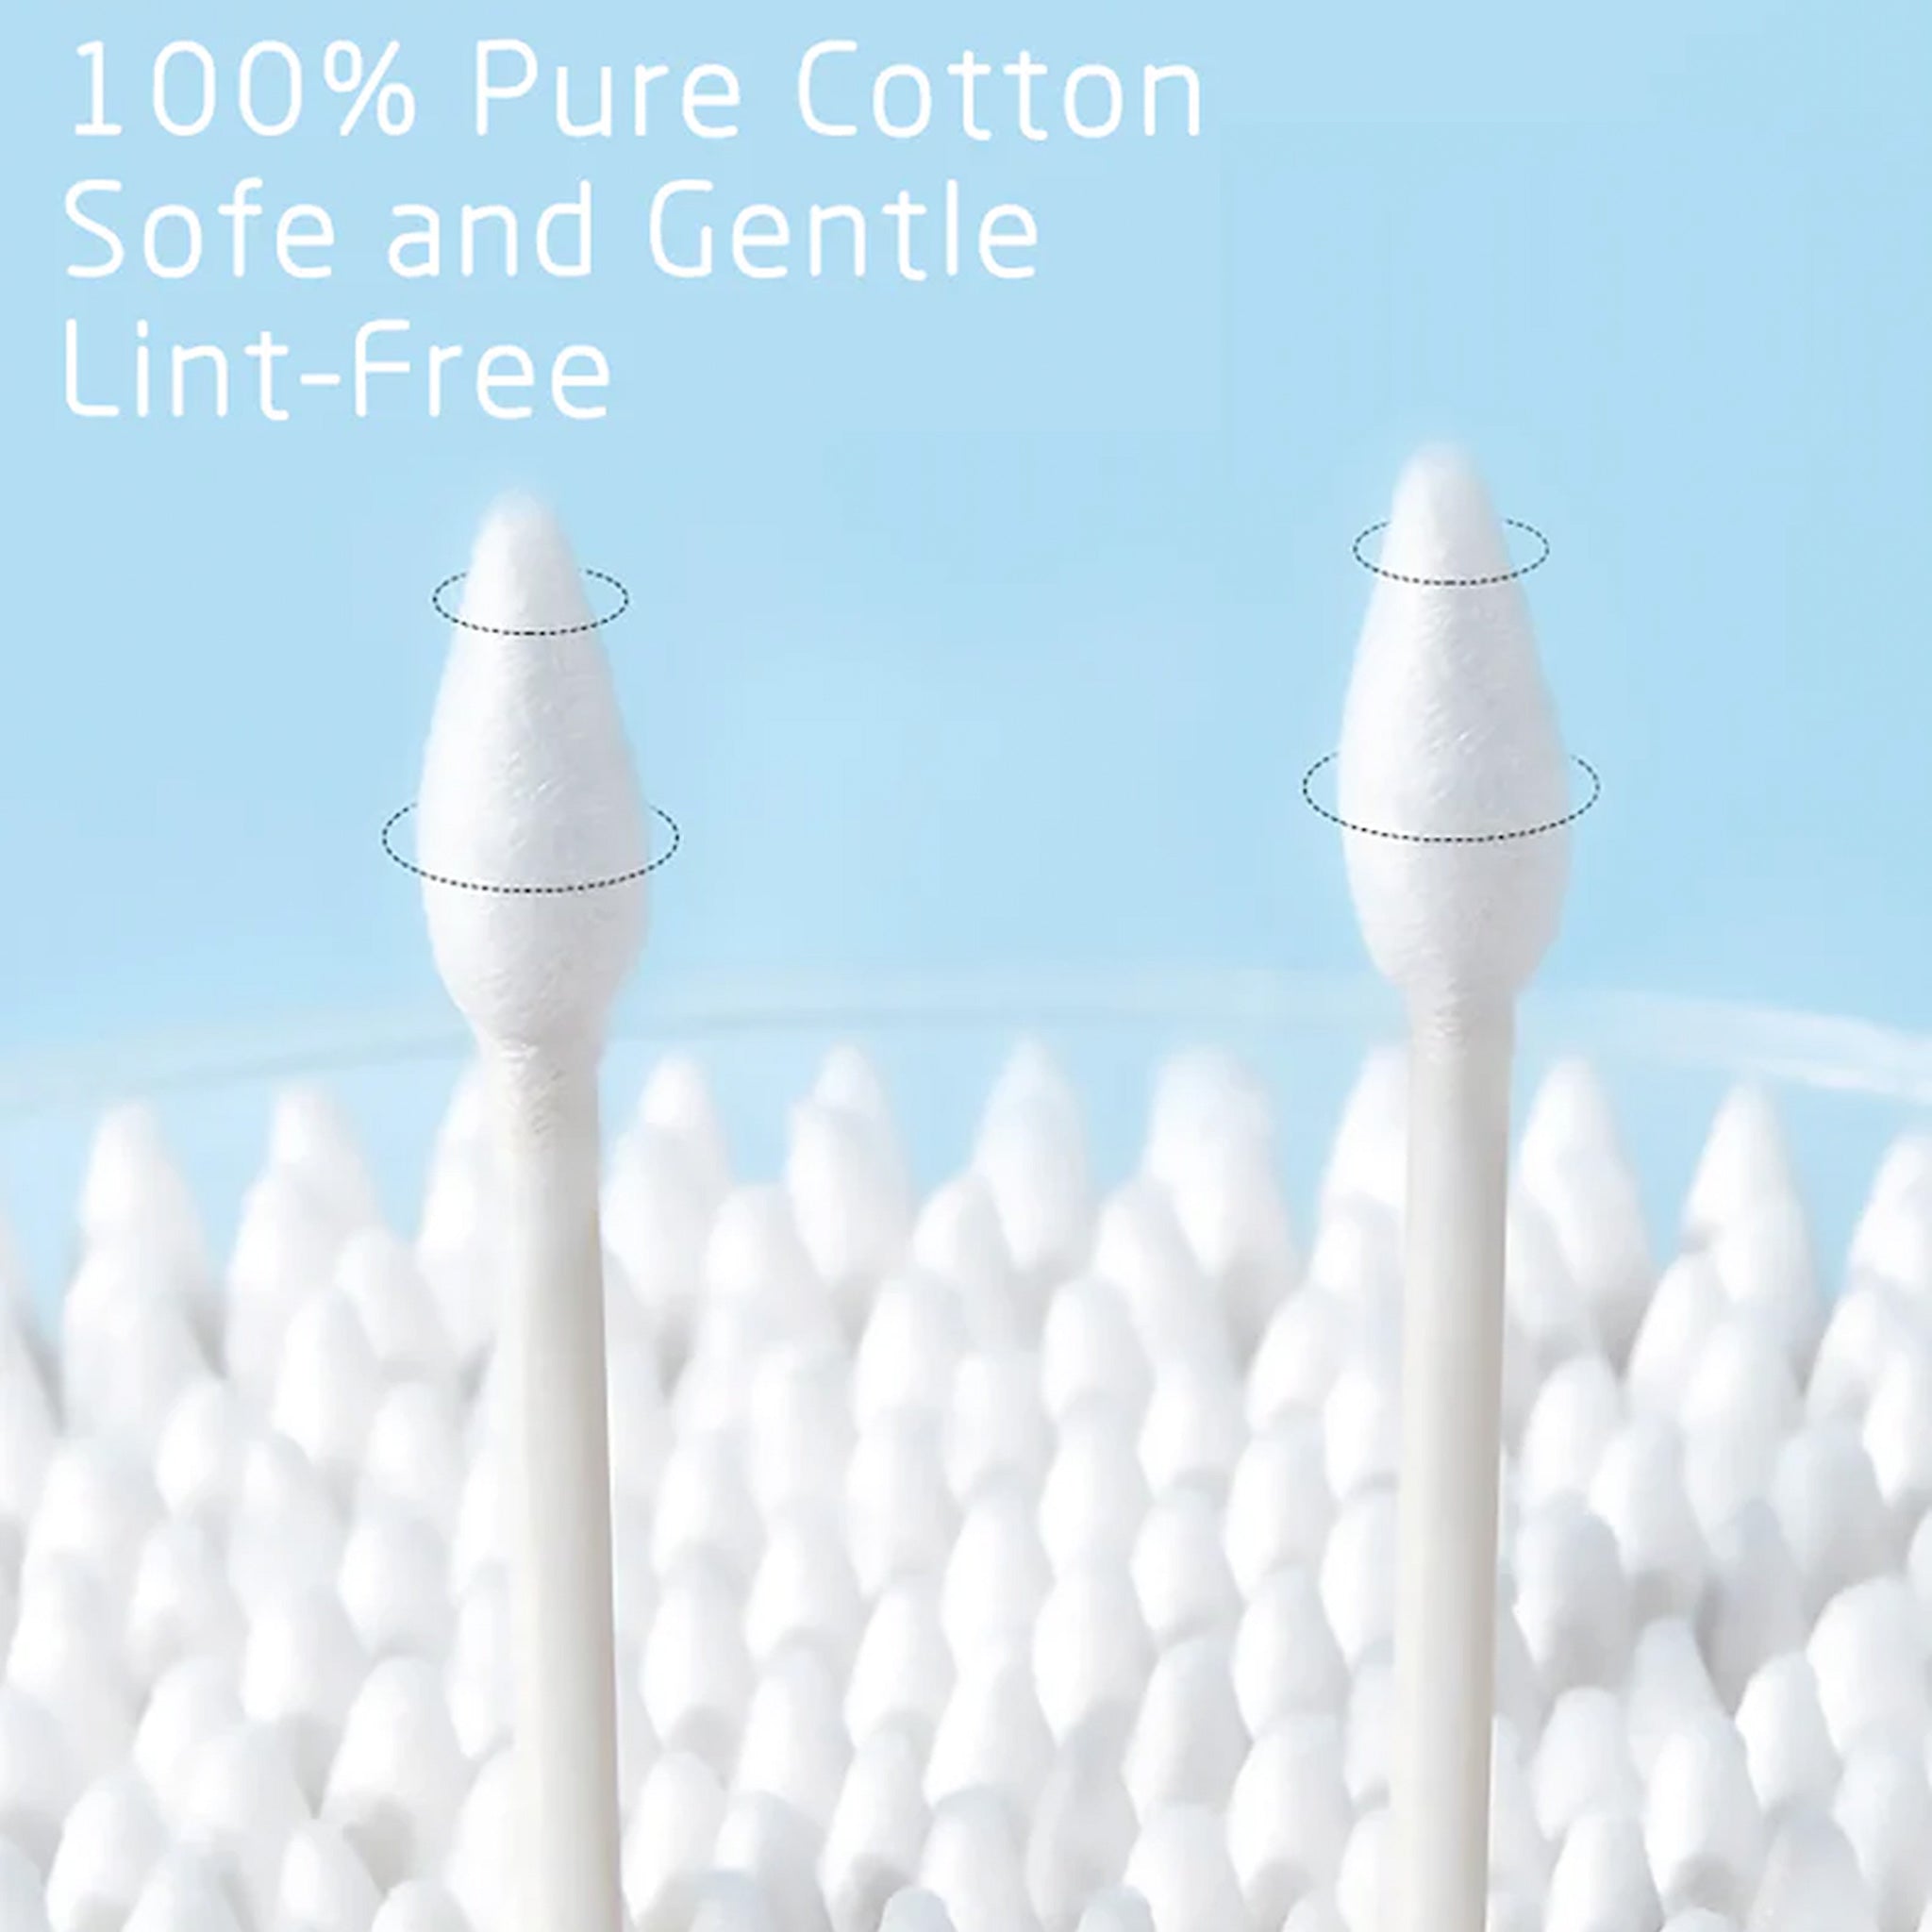 SHINO Dual 100% Organic Cotton Swabs (Cosmetic use)